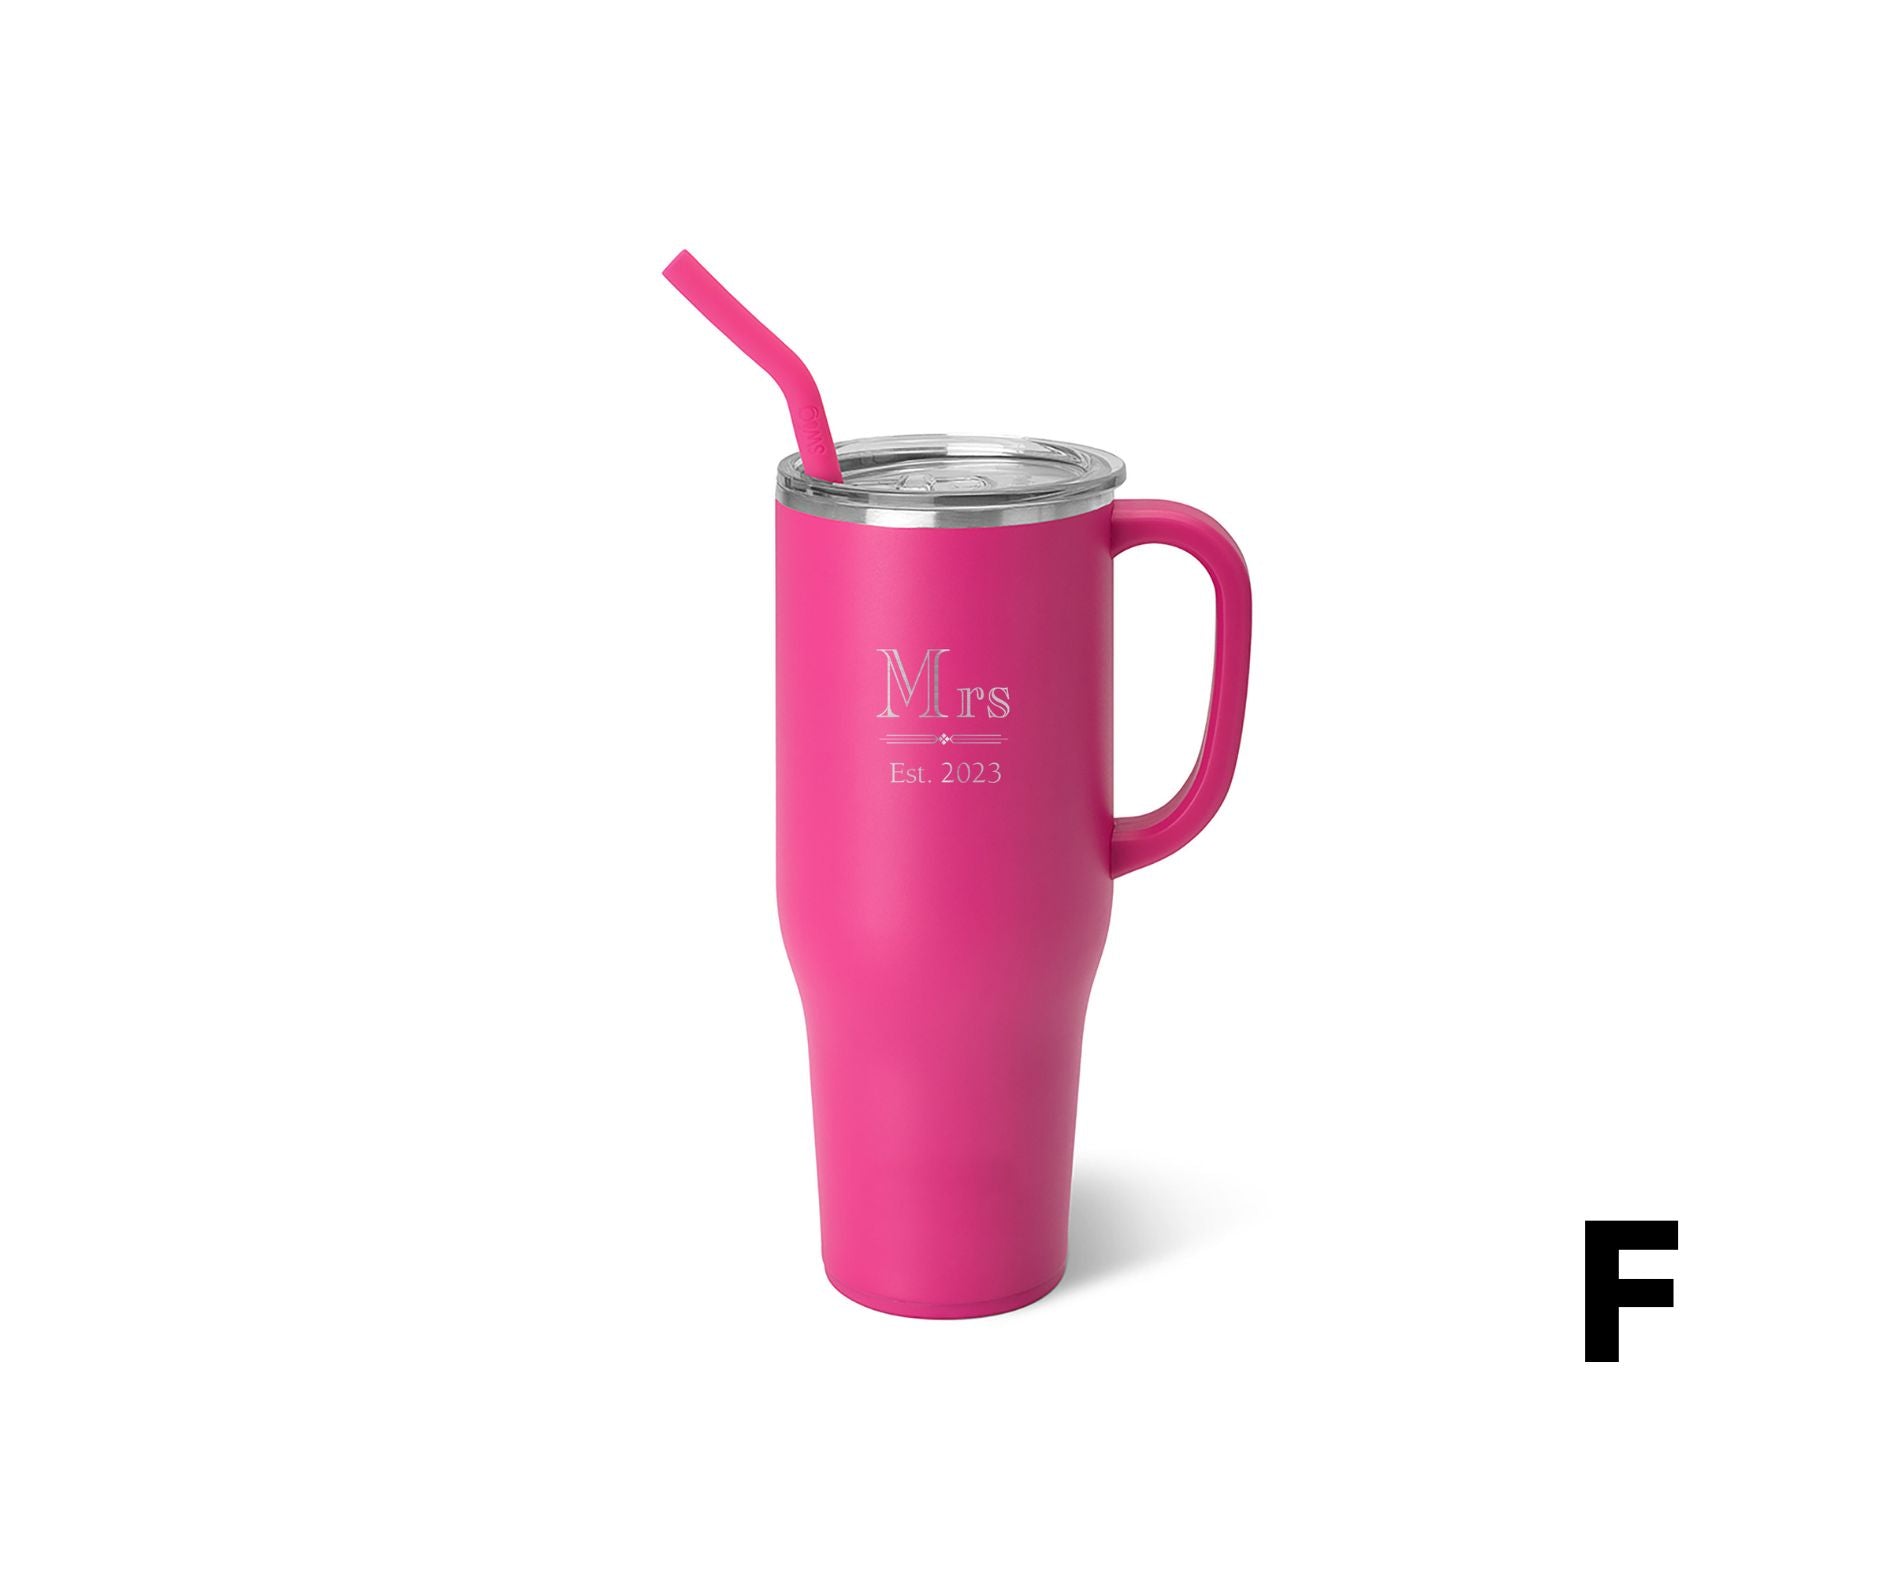 Personalized Swig Hot Pink Mega Mug (40oz)